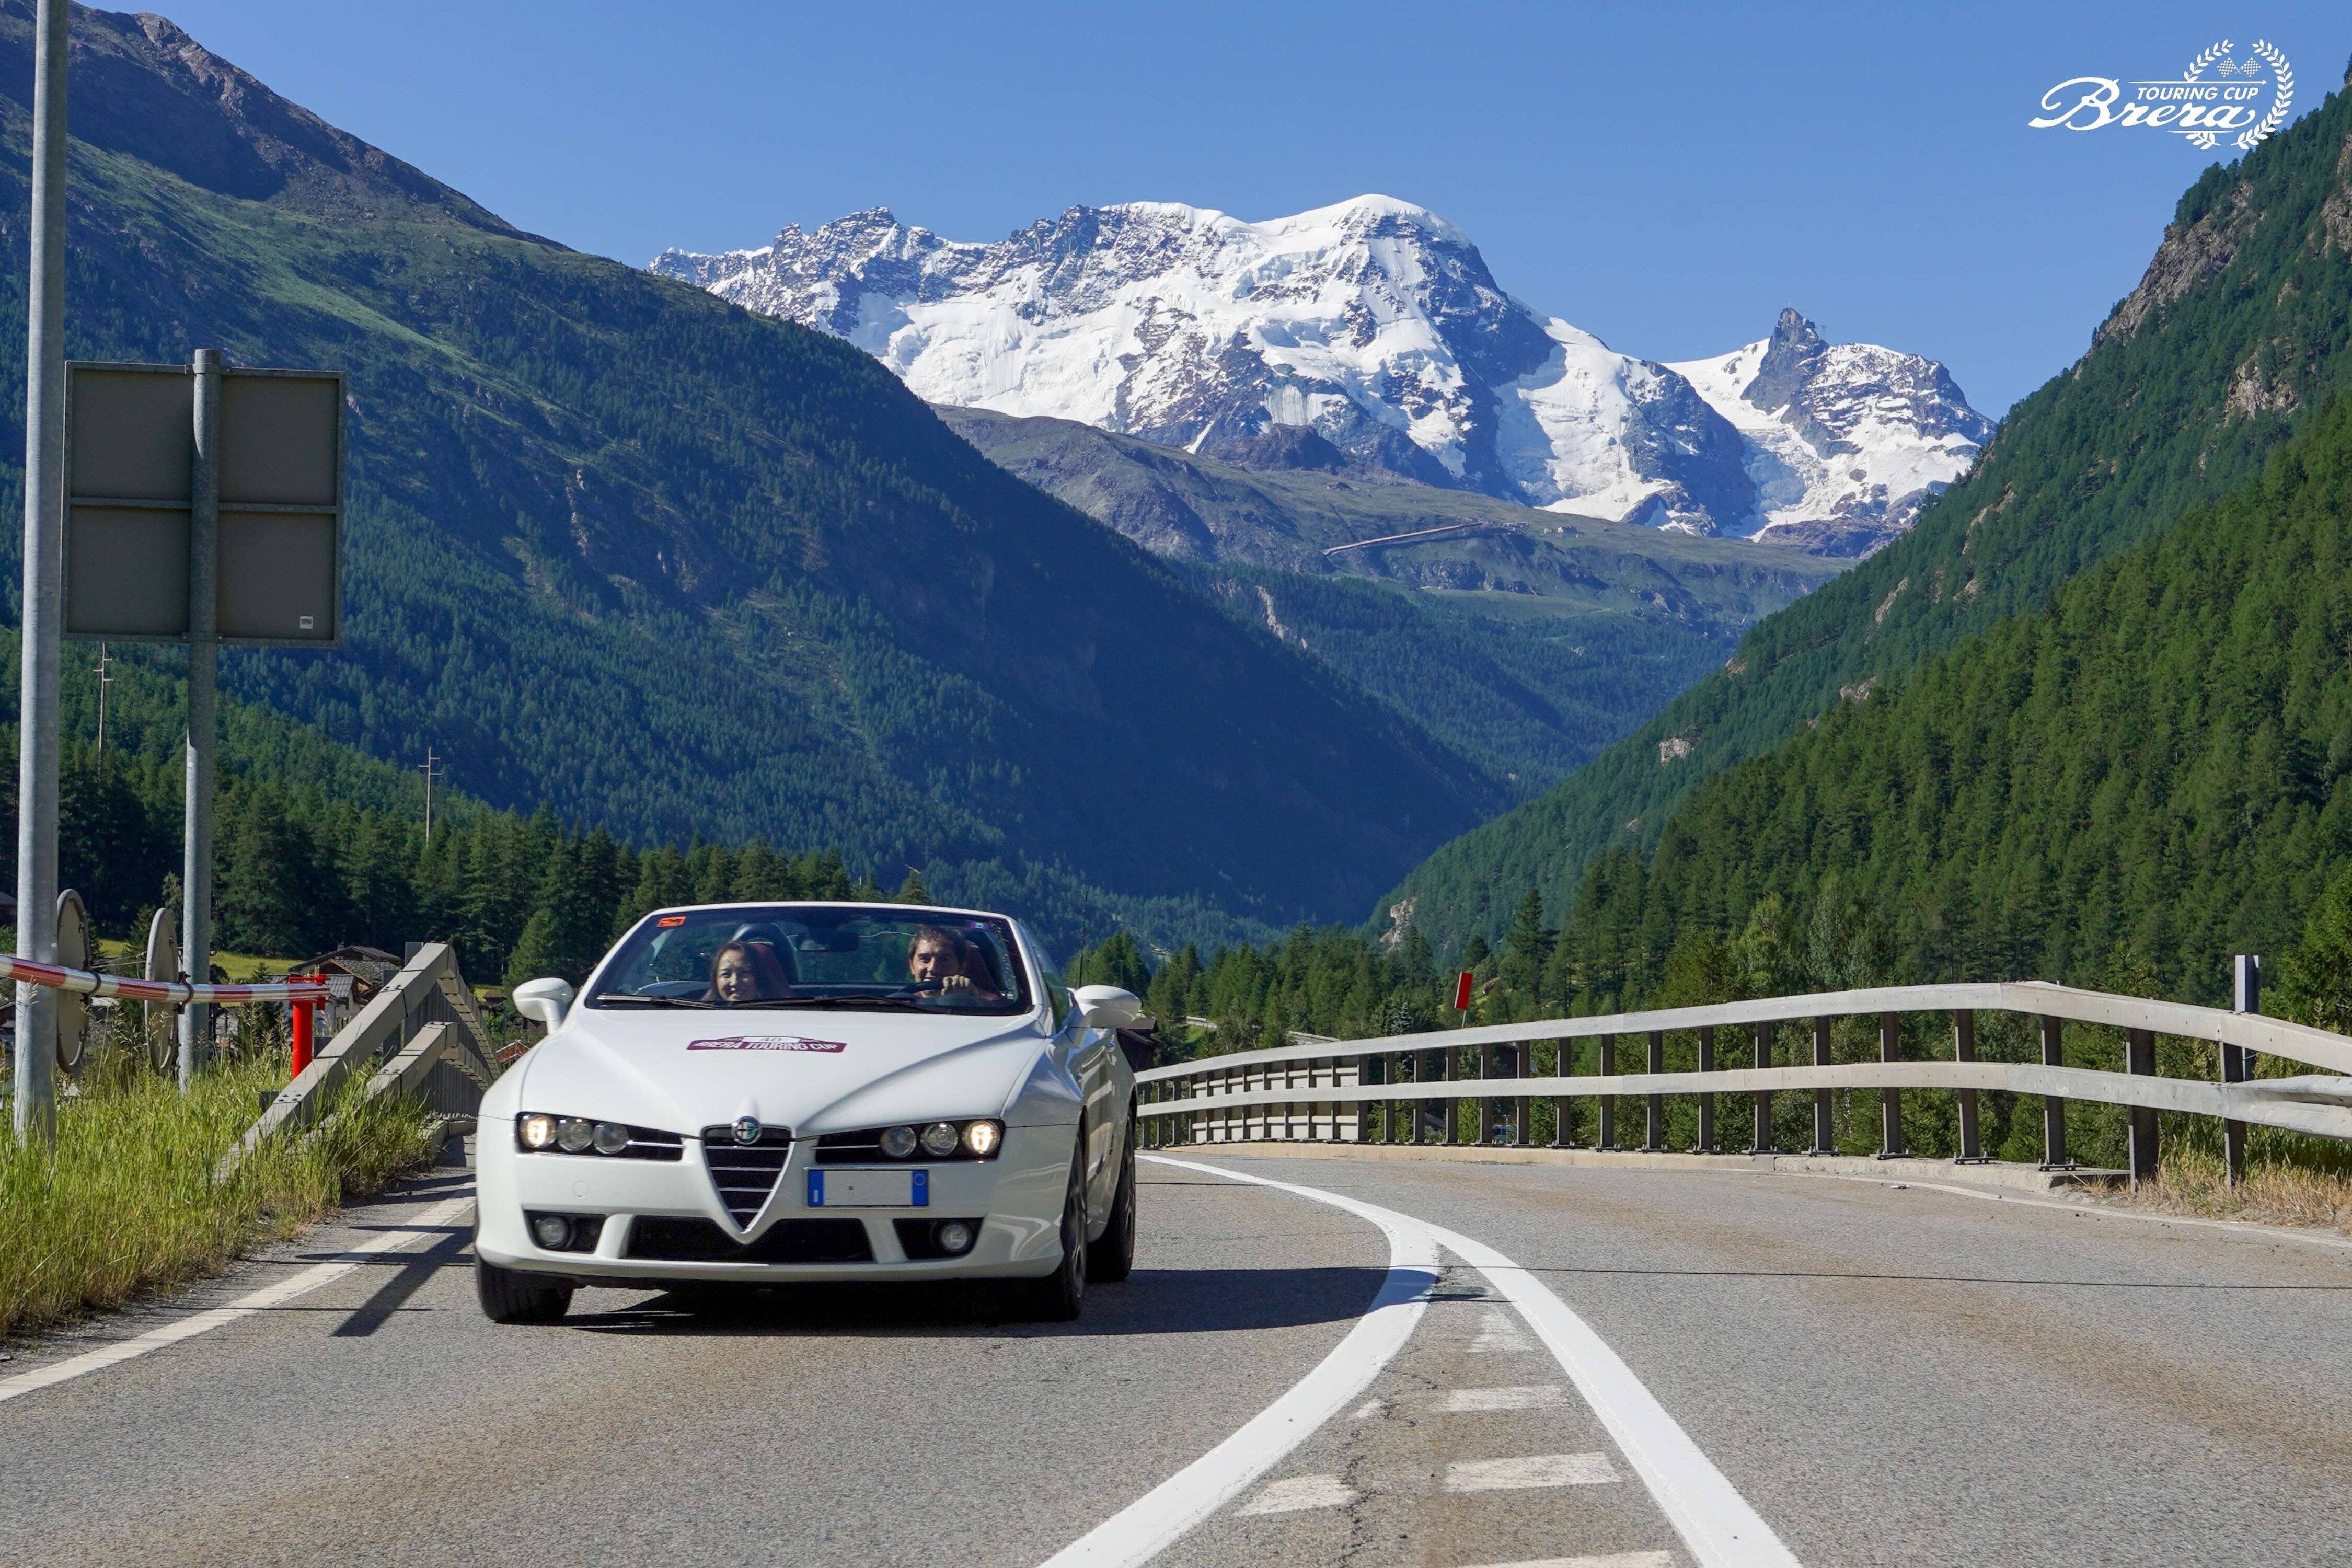 Alfa Romeo Spider Q4 - Switzerland-4800.jpg